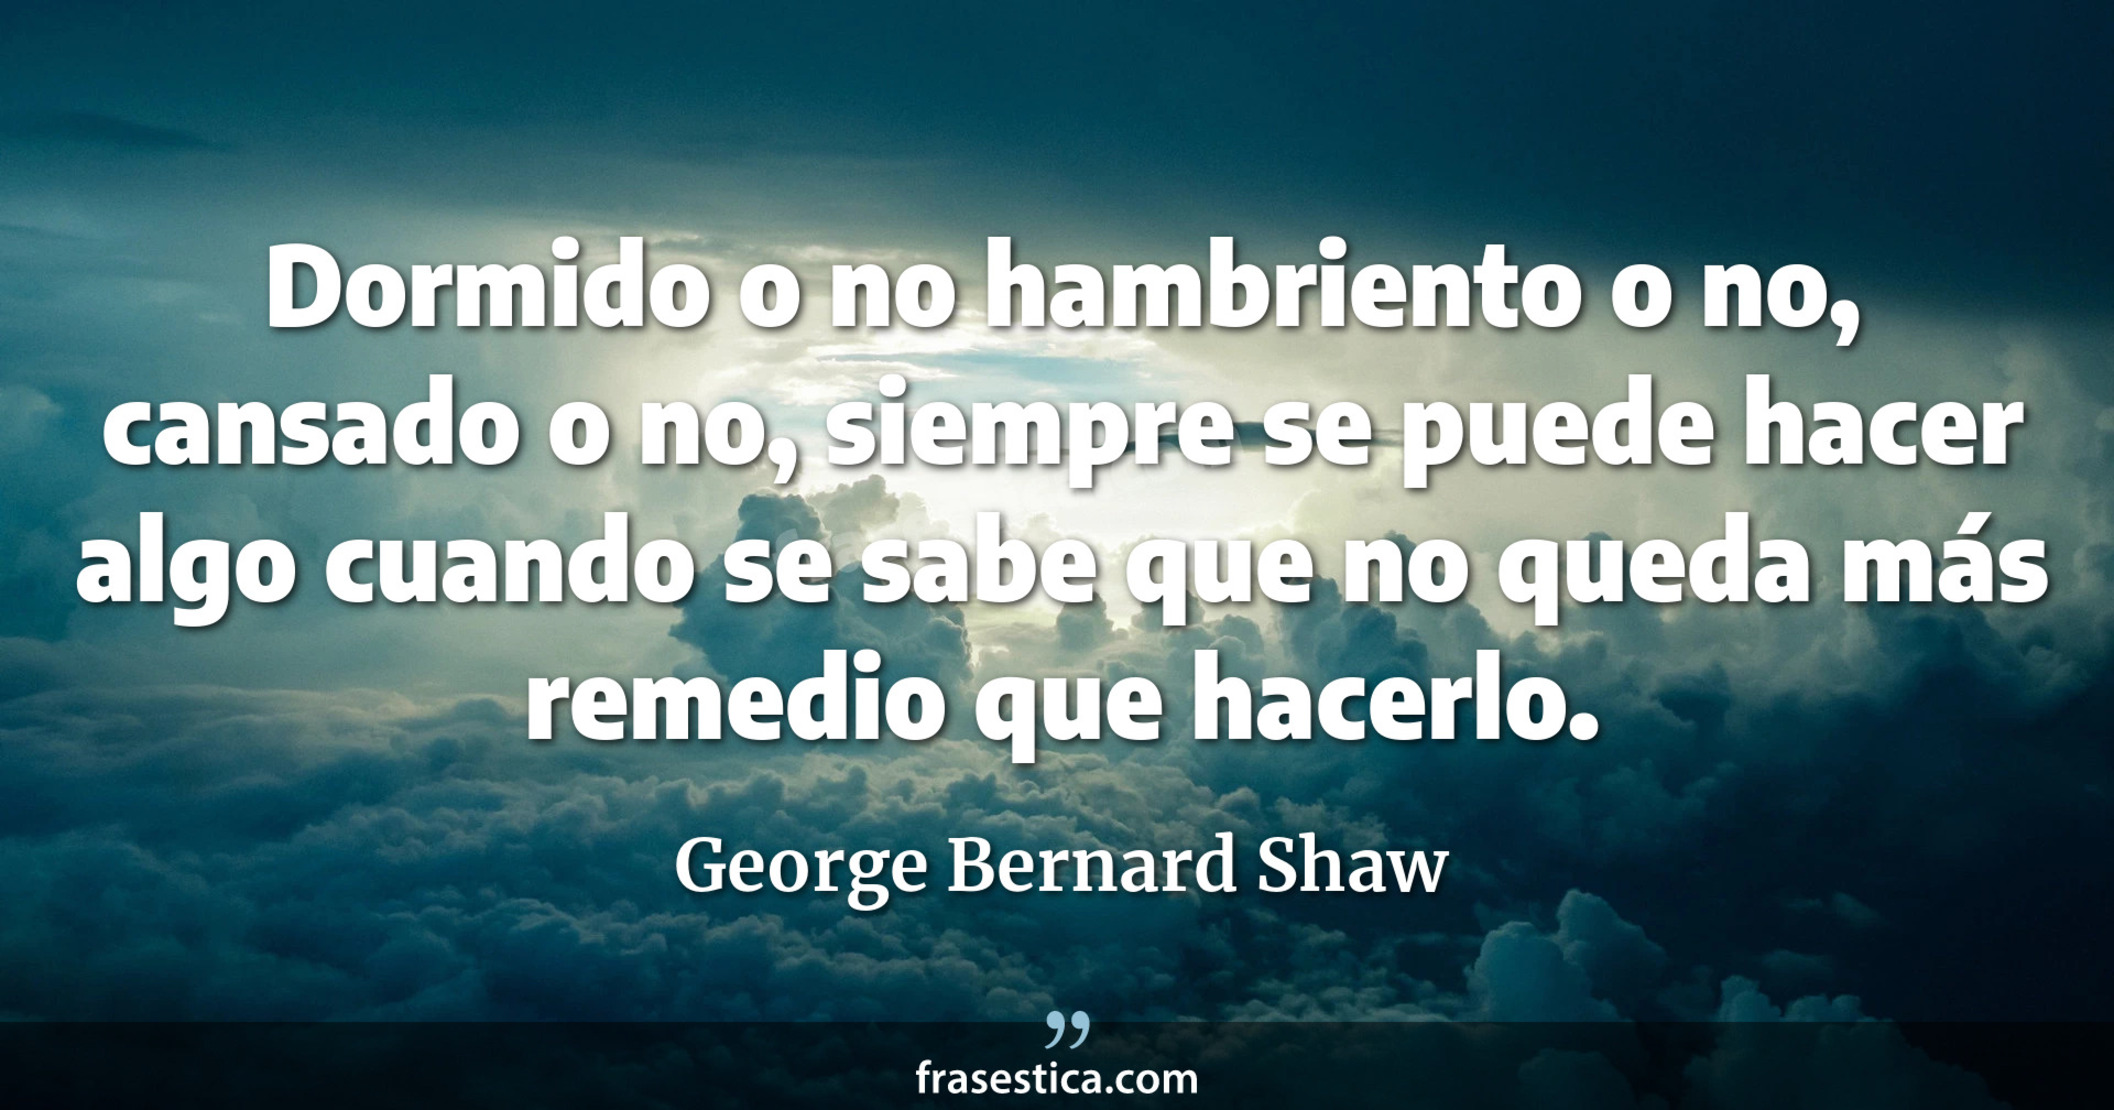 Dormido o no hambriento o no, cansado o no, siempre se puede hacer algo cuando se sabe que no queda más remedio que hacerlo. - George Bernard Shaw